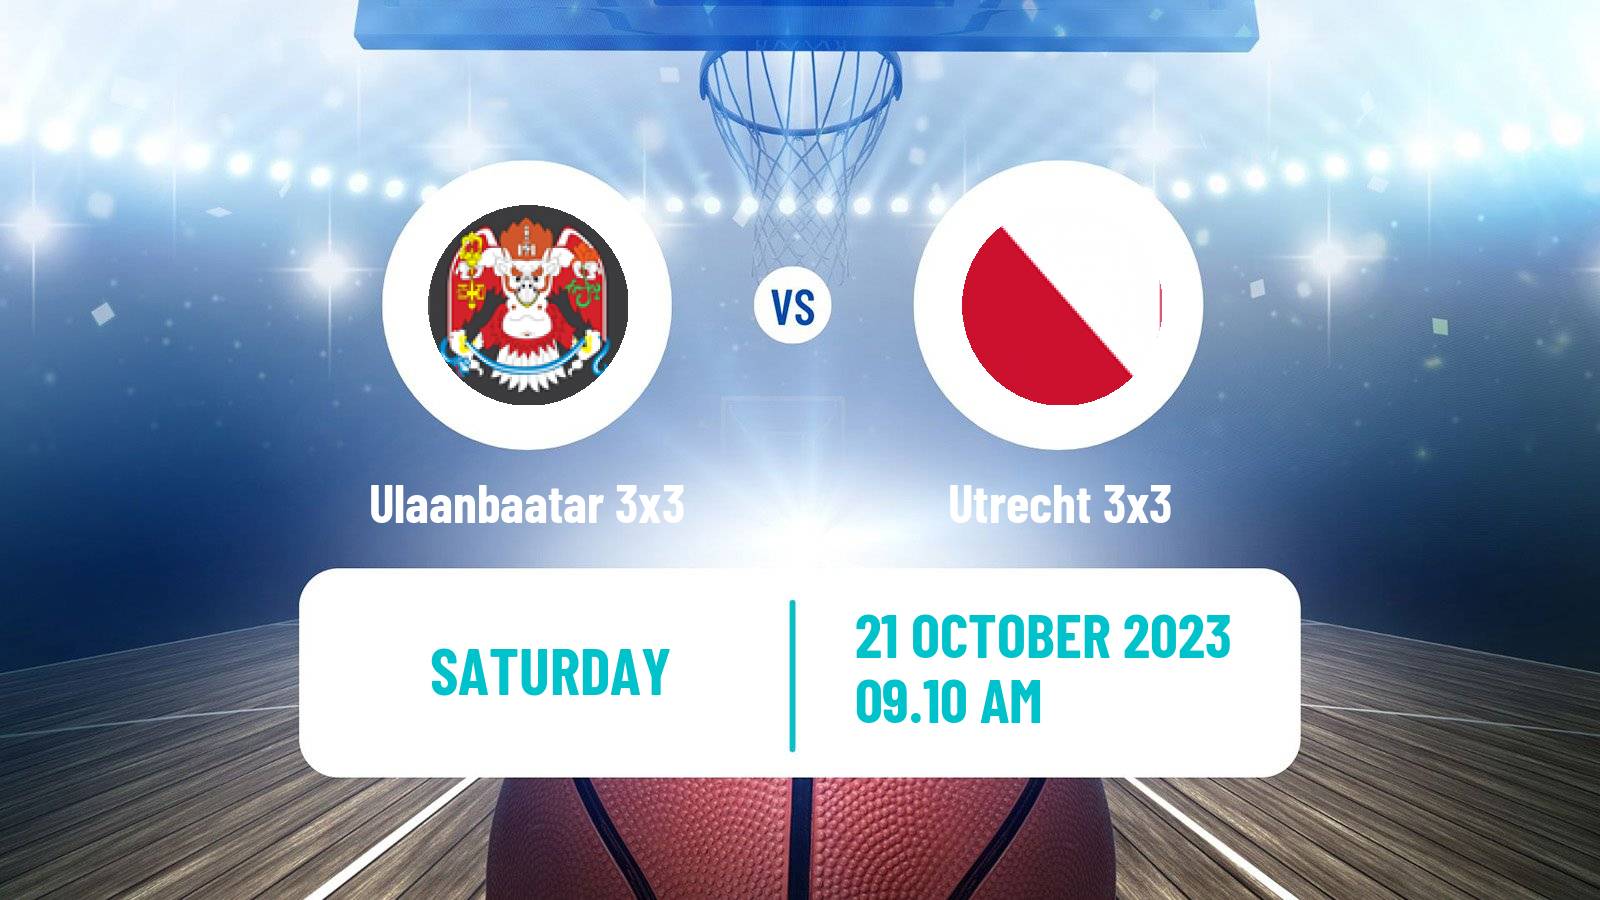 Basketball World Tour Chengdu 3x3 Ulaanbaatar 3x3 - Utrecht 3x3